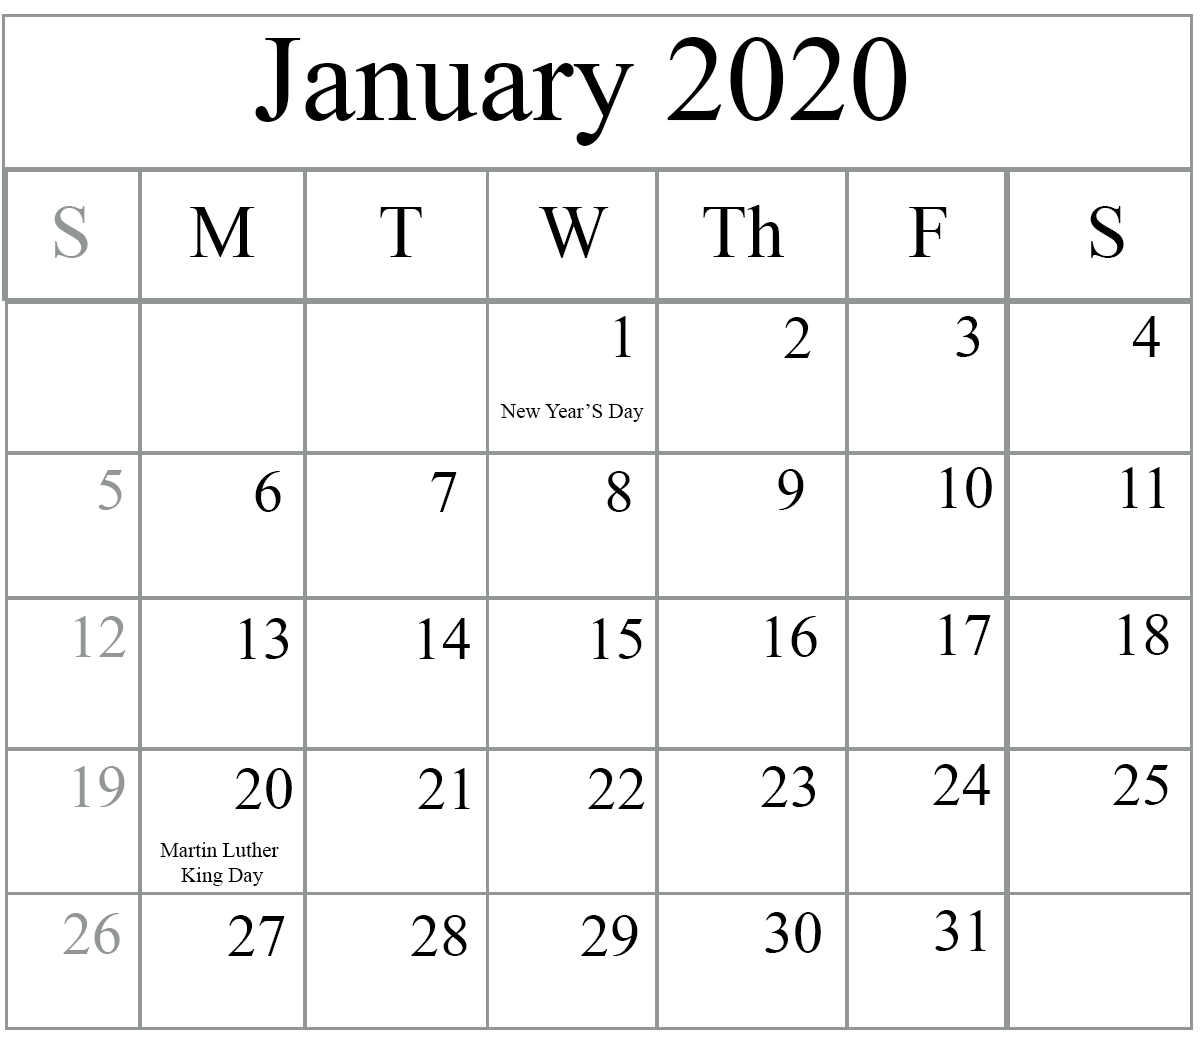 January 2020 Calendar Printable in PDF Word Excel